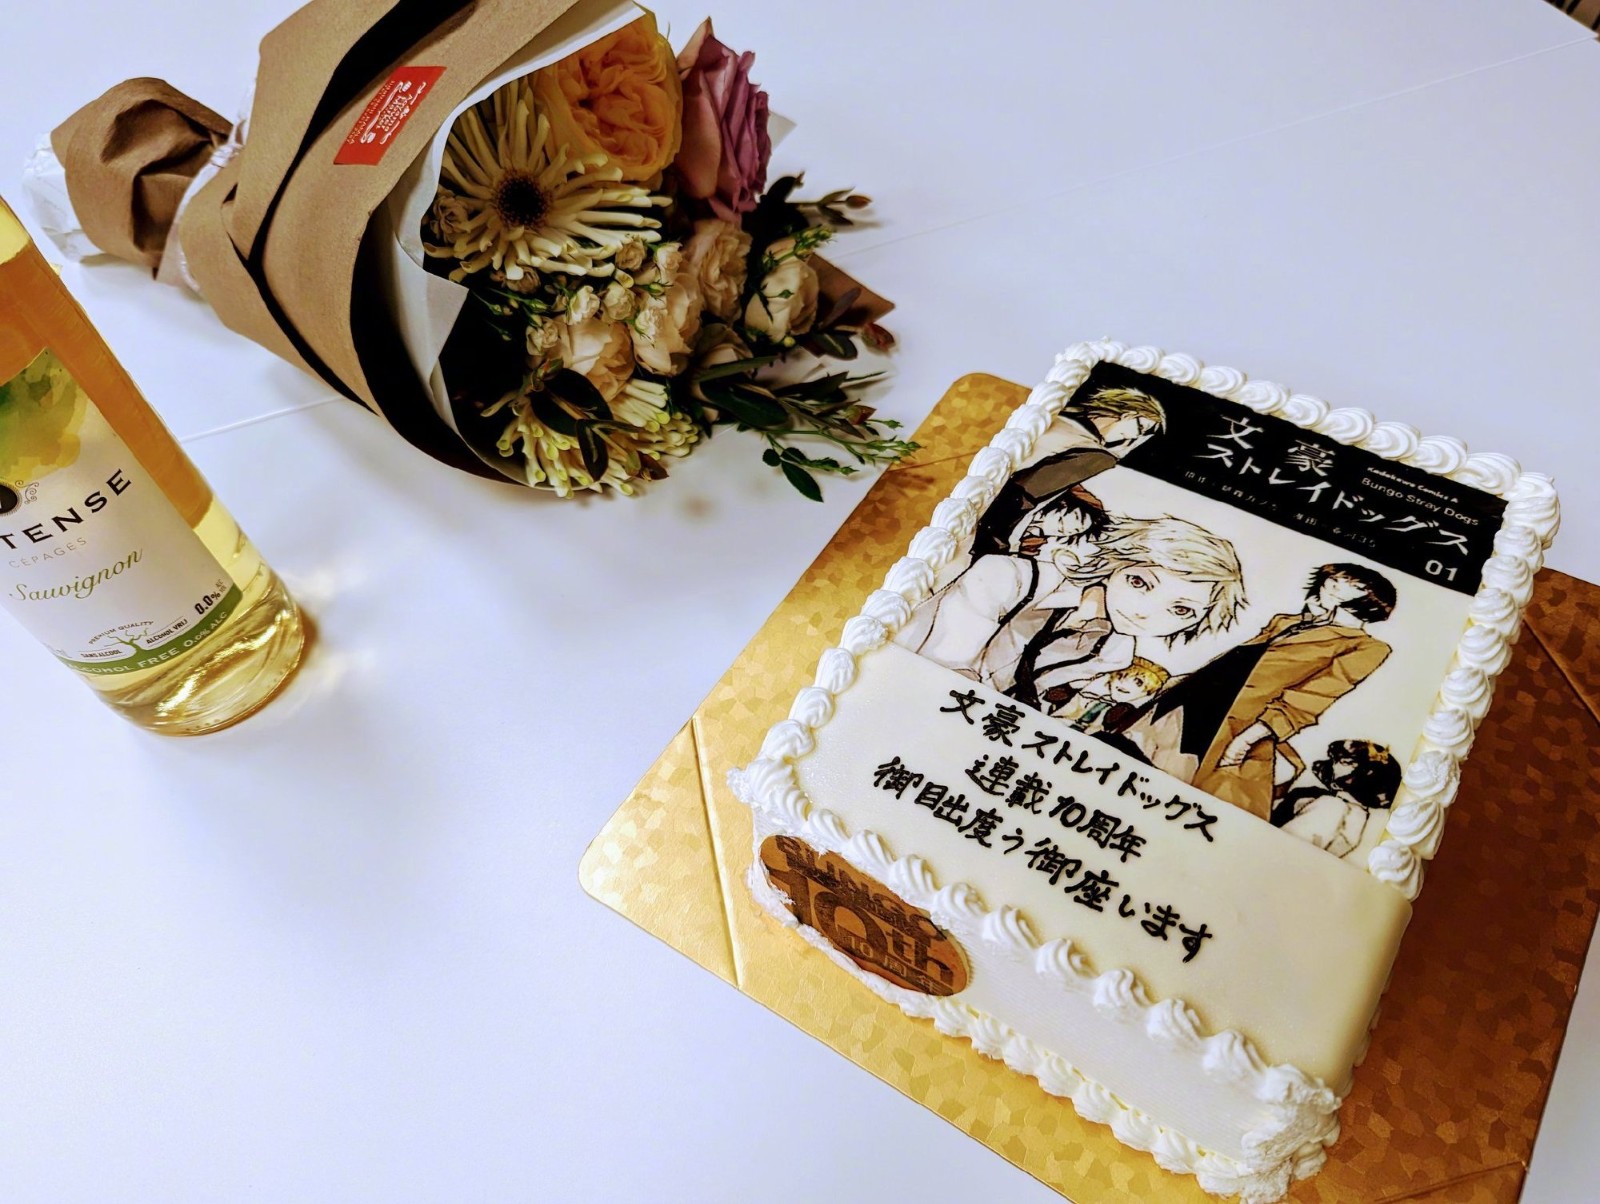 《文豪野犬》官推发布了10周年纪念蛋糕